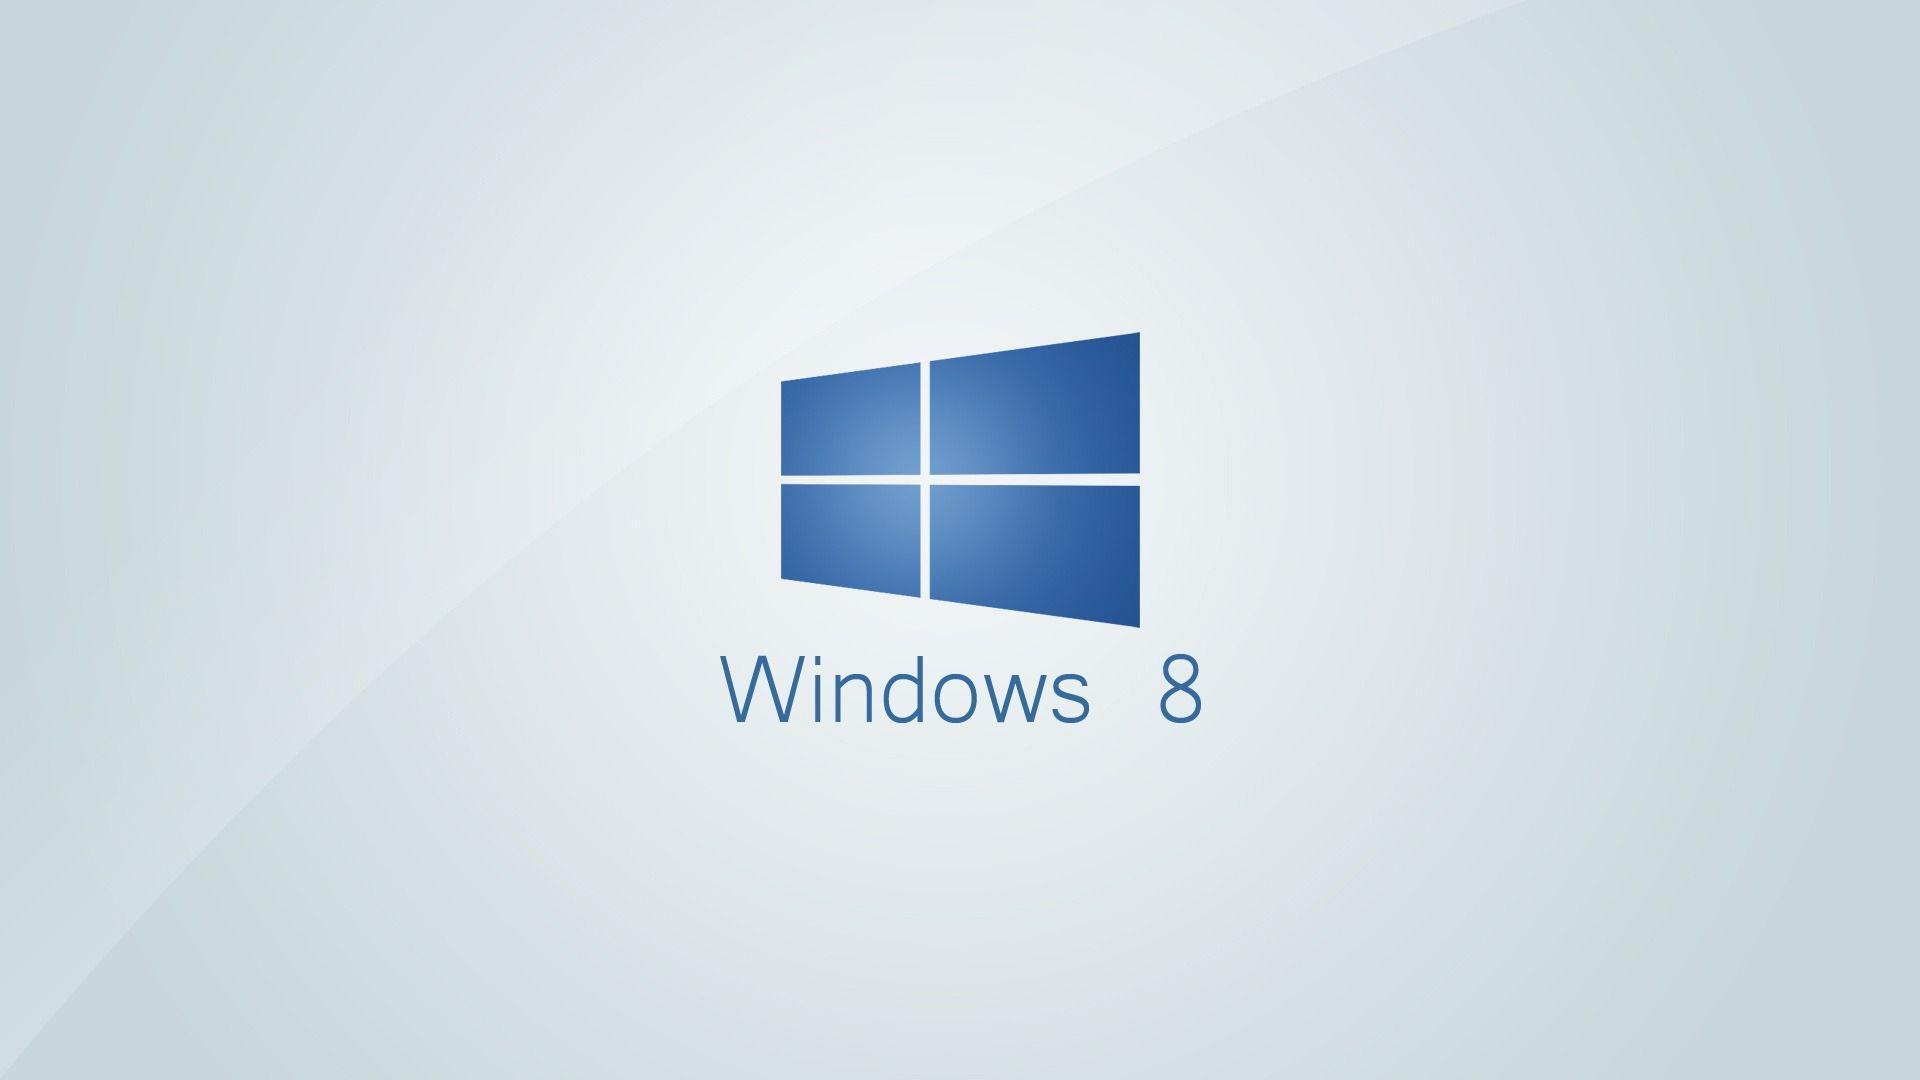 Windows 8 Minimalistic 1920 x 1080 Wallpapers